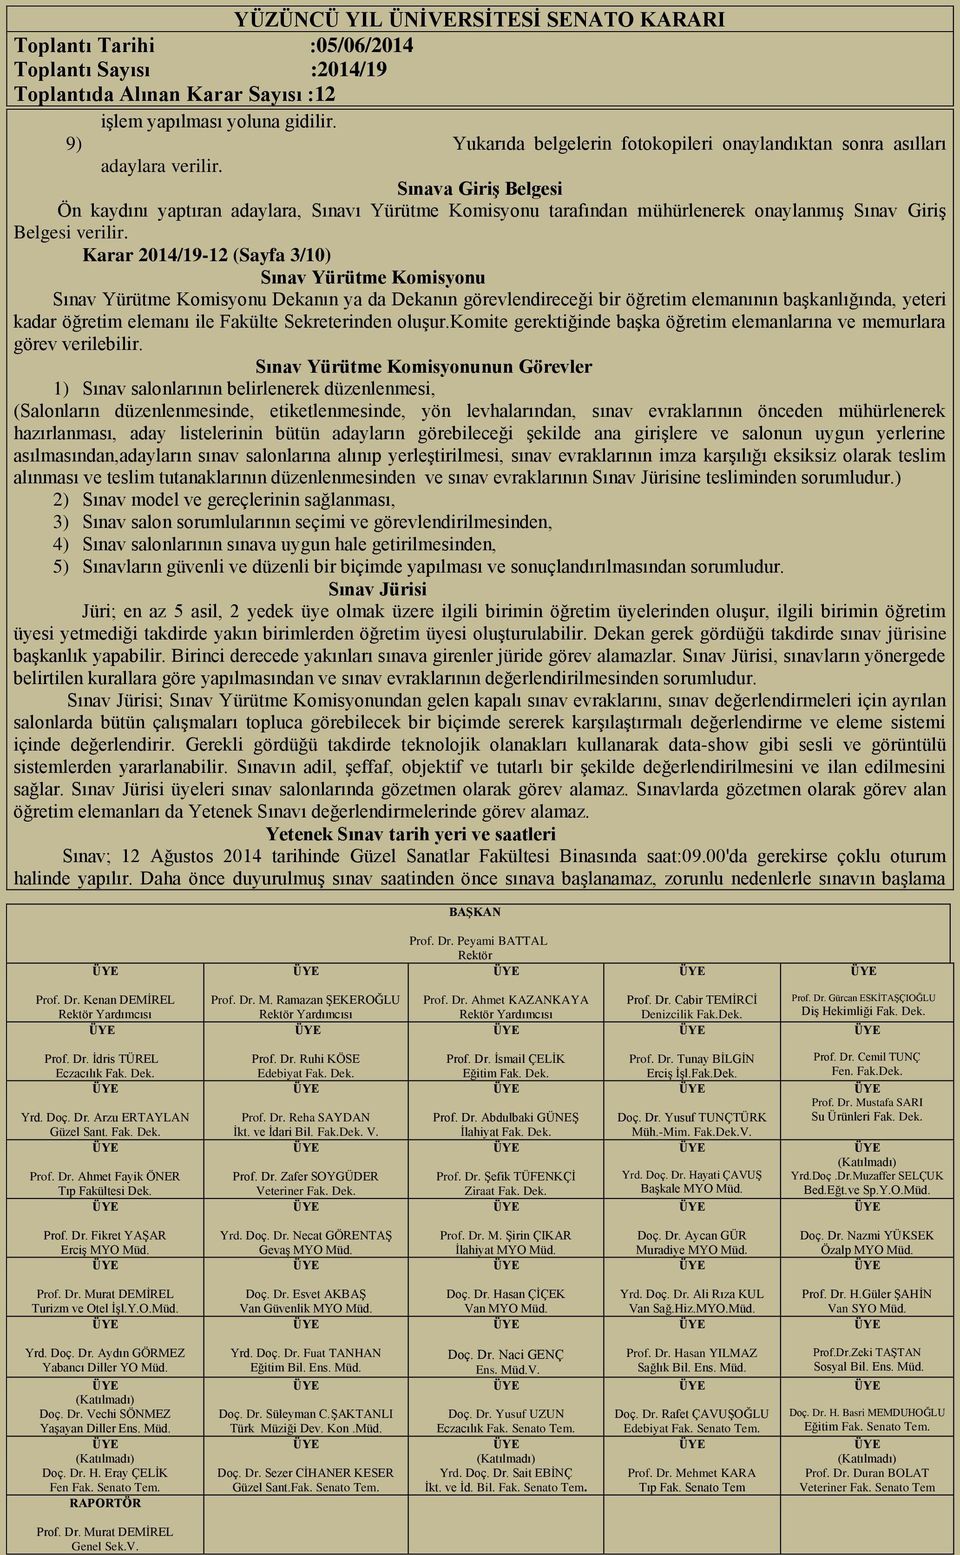 Karar 2014/19-12 (Sayfa 3/10) Sınav Yürütme Komisyonu Sınav Yürütme Komisyonu Dekanın ya da Dekanın görevlendireceği bir öğretim elemanının başkanlığında, yeteri kadar öğretim elemanı ile Fakülte